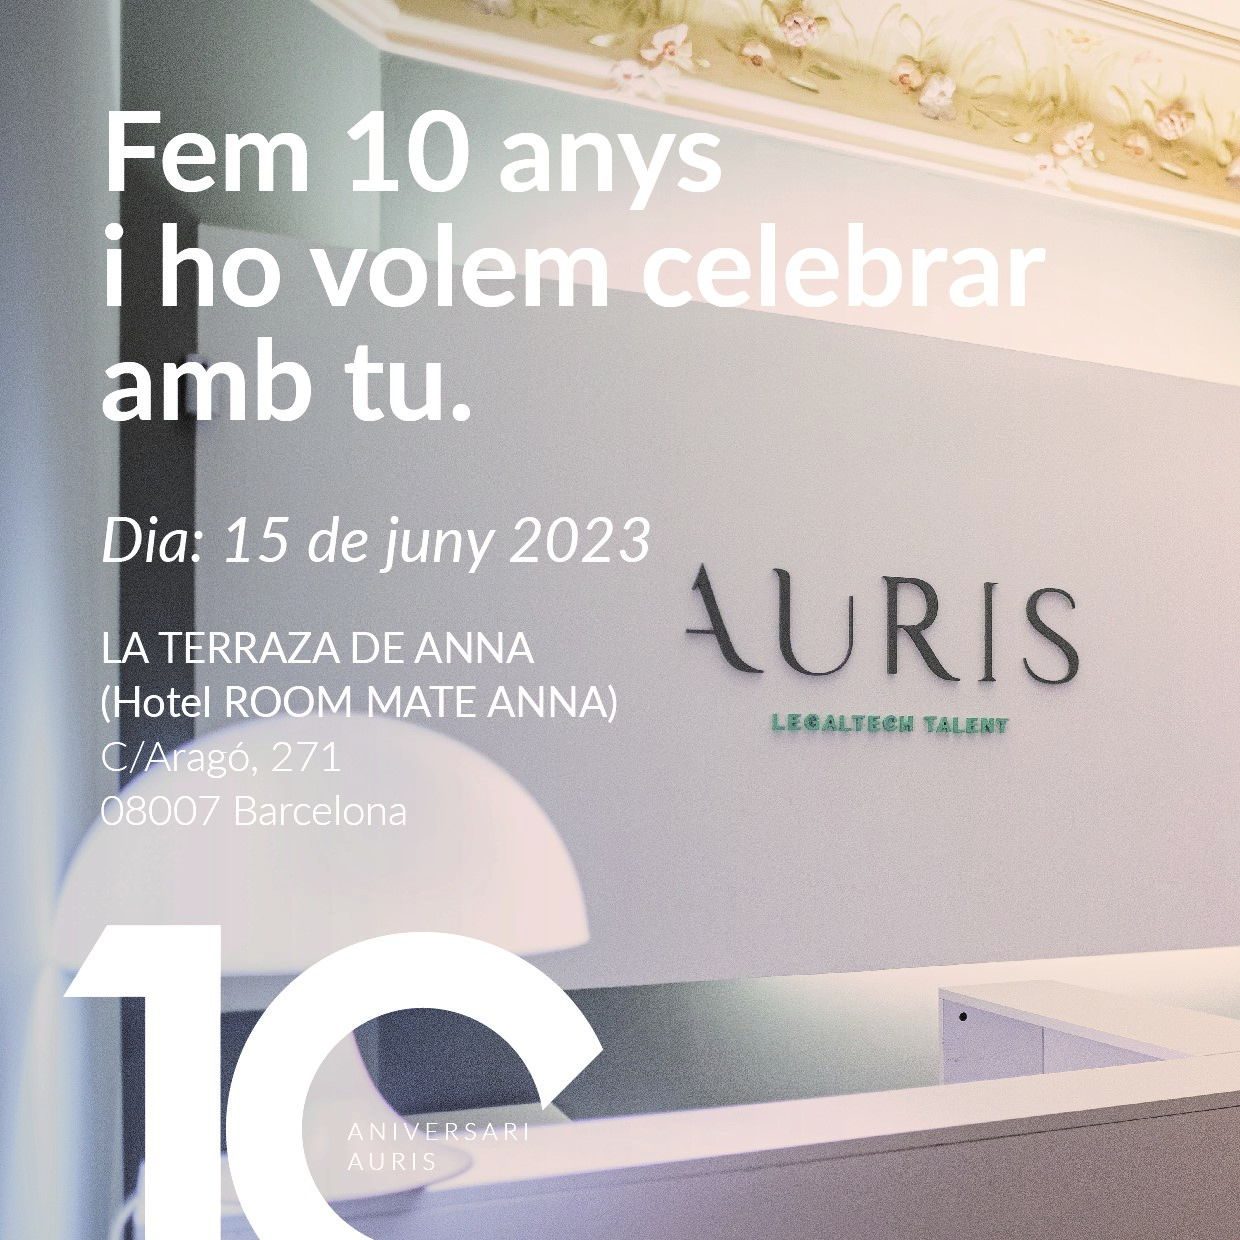 Auris ha cumplido 10 años y nos gustaría poder brindar contigo